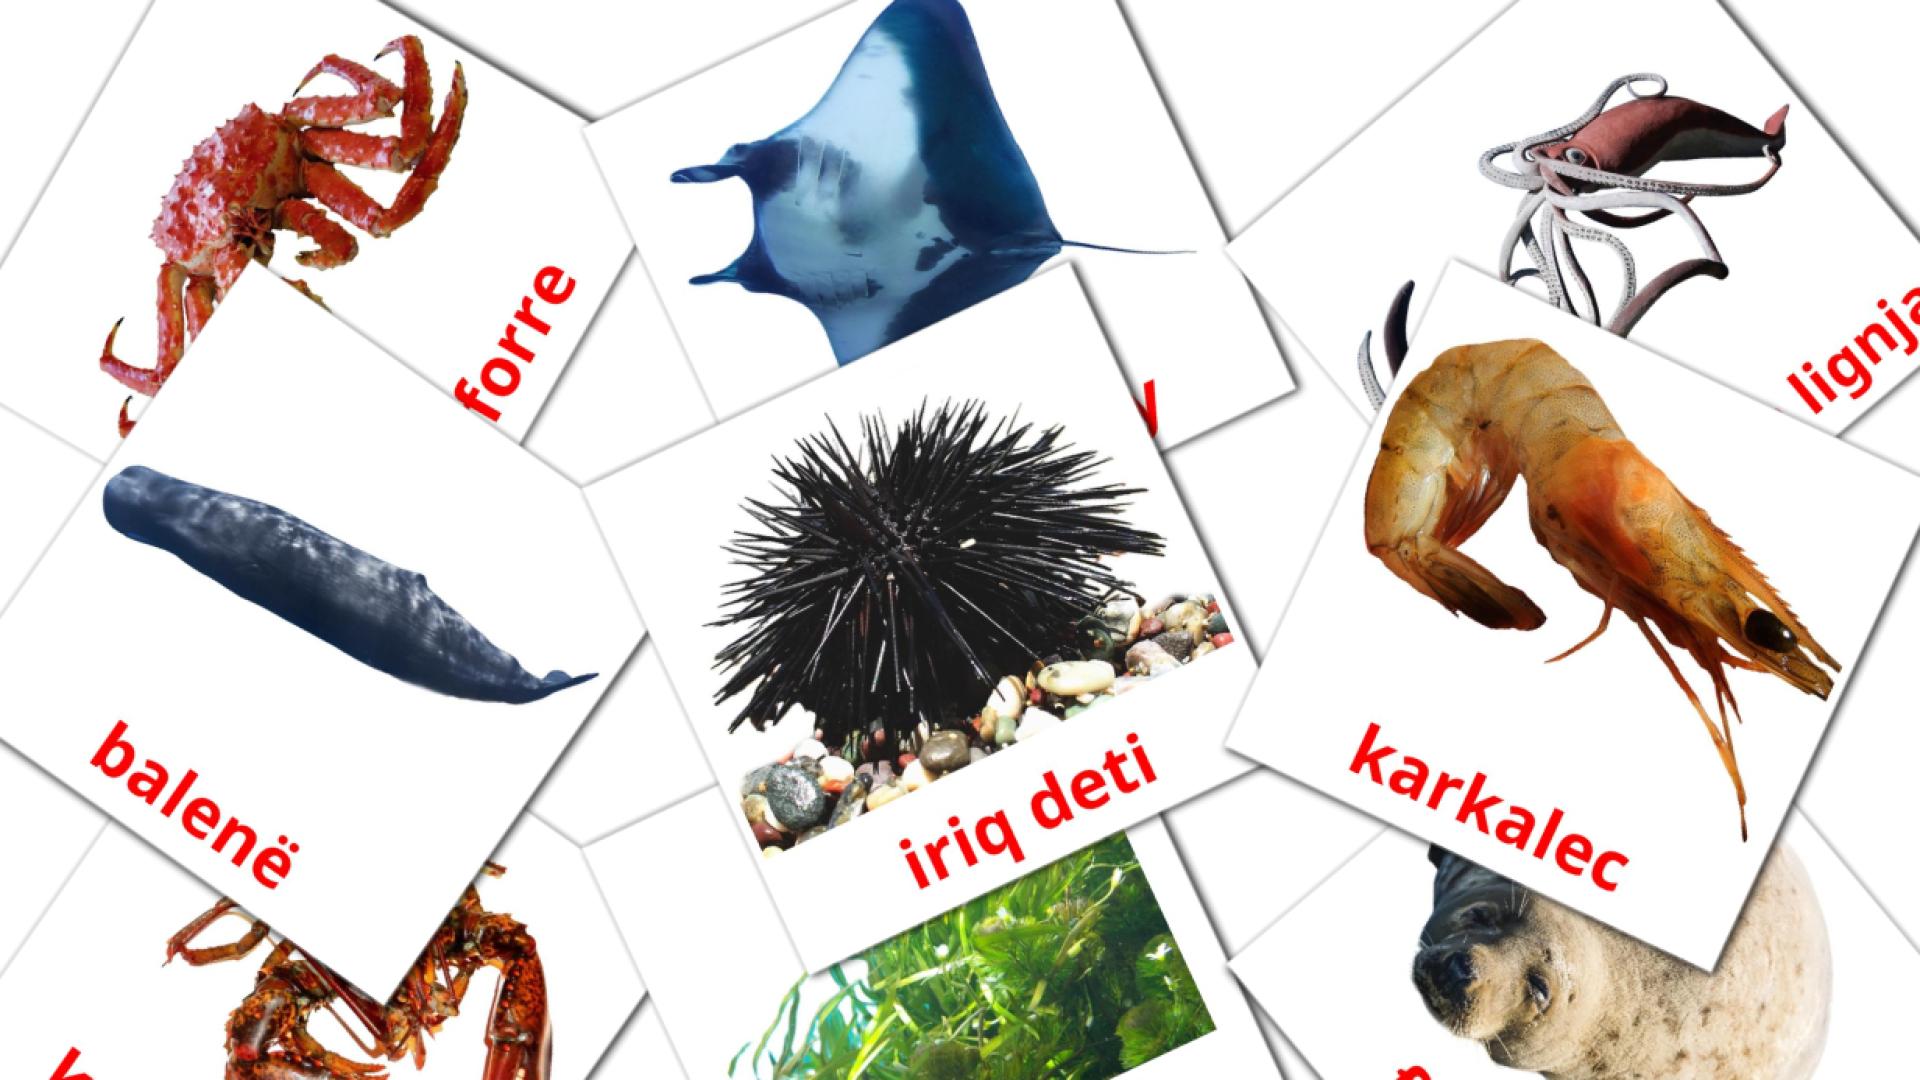 29 Kafshët e detit flashcards